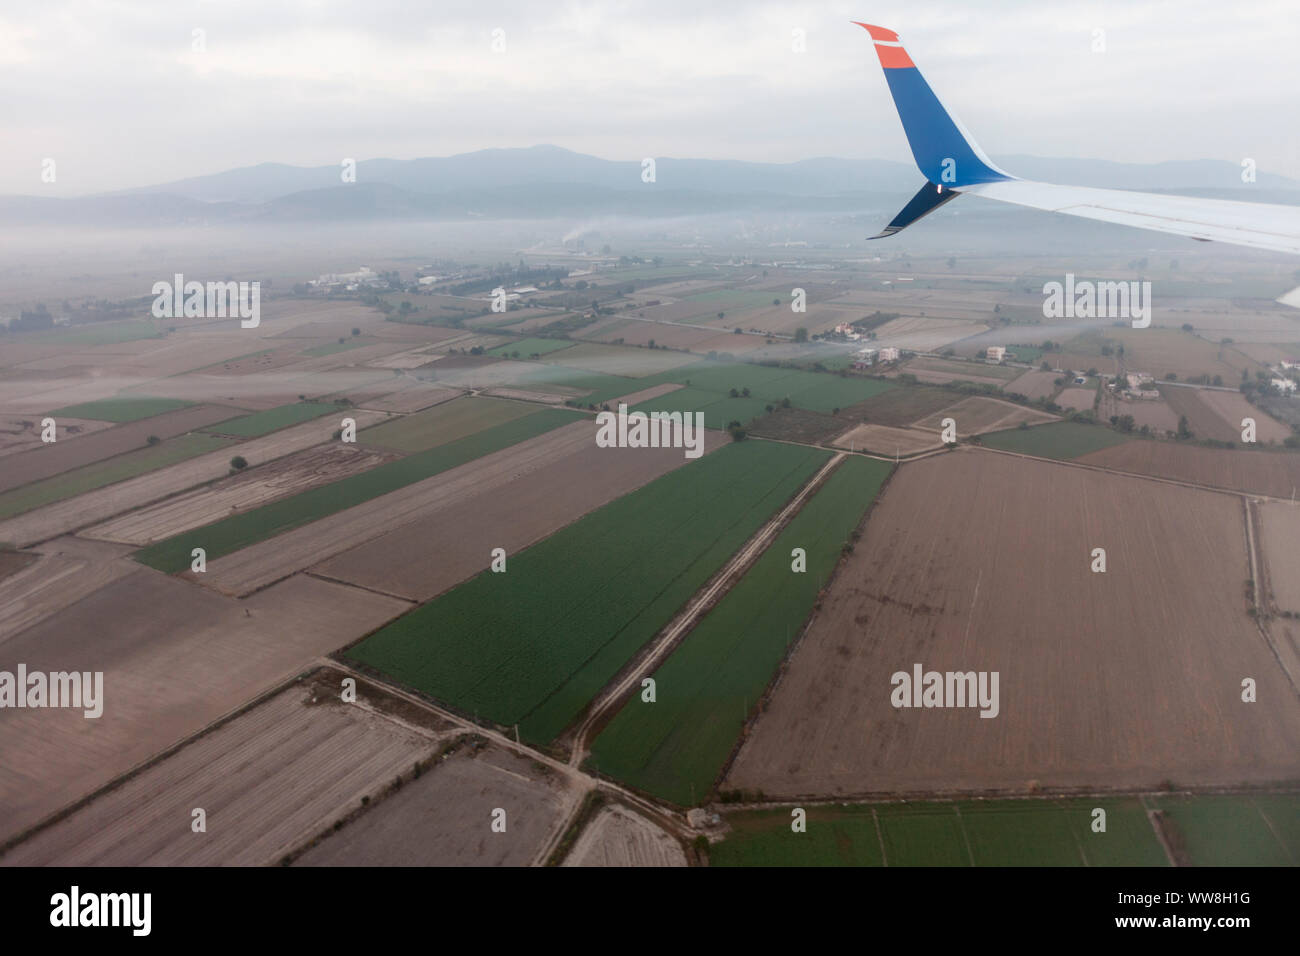 Avant l'atterrissage ce vortex turbulence a été visible derrière l'aile d'avion, antenne avec aile d'avion et de terre agricole juste avant l'atterrissage sur l'aéroport, de la Turquie, de Bodrum-Milas Banque D'Images